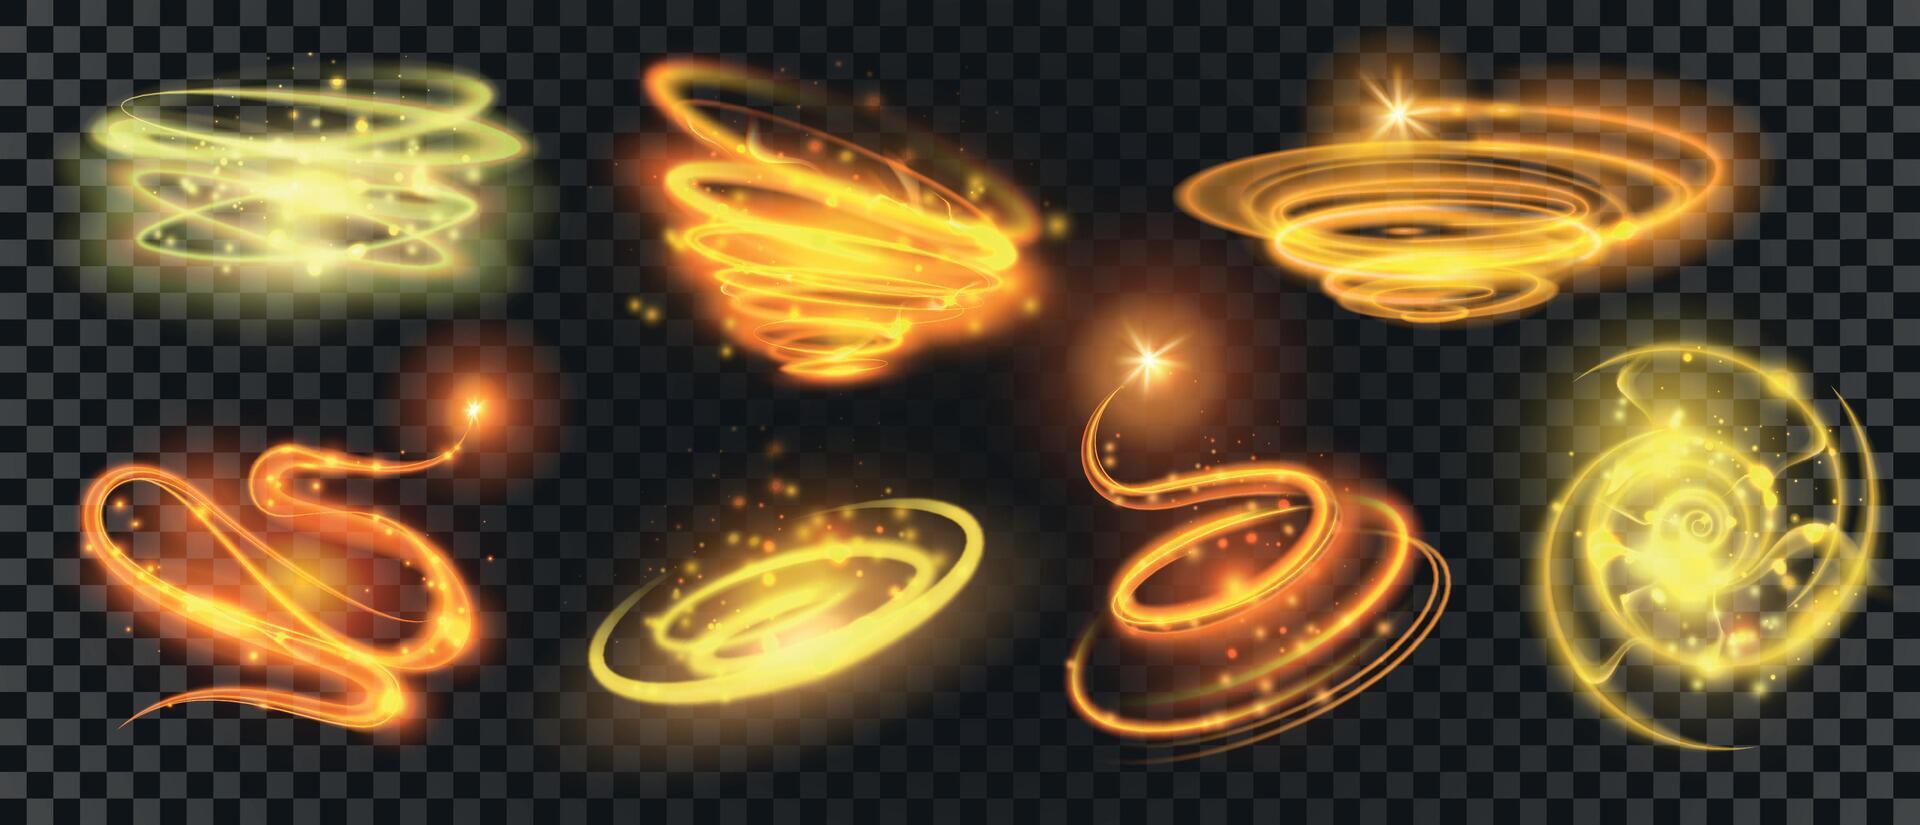 skinande guld magi spiraler och cirklar med gnistra damm. glöd glitter virvlar runt. skytte stjärna med rörelse effekt. magi ljus spår vektor uppsättning